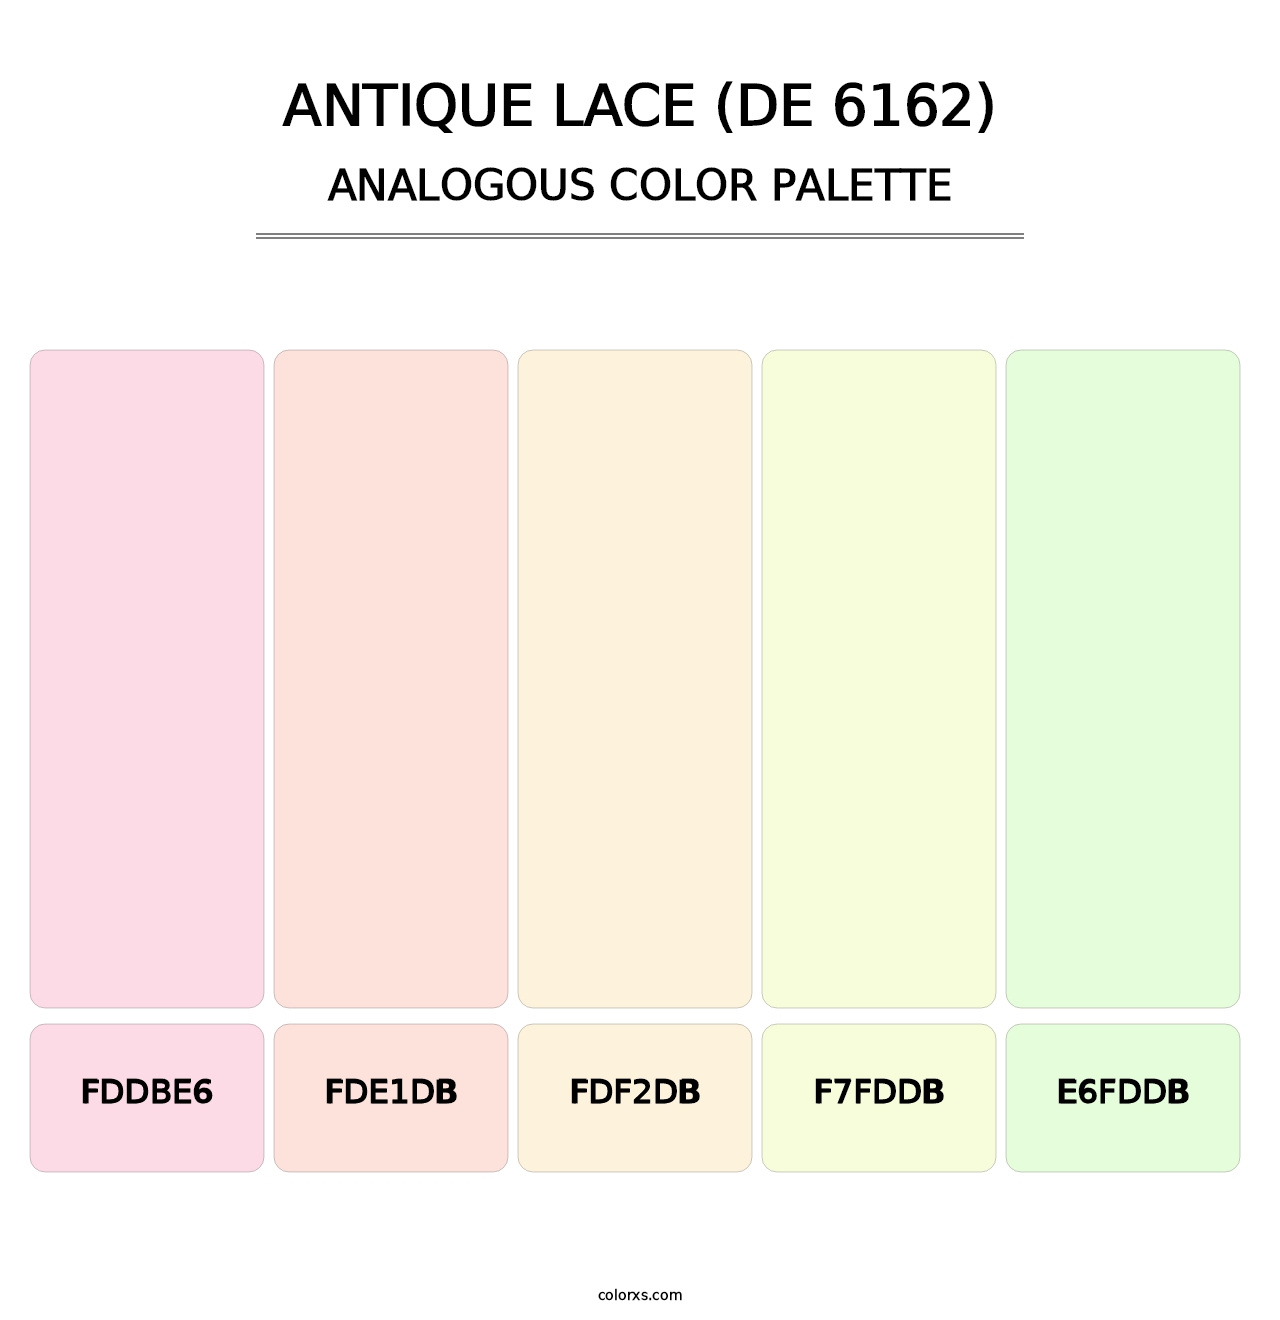 Antique Lace (DE 6162) - Analogous Color Palette